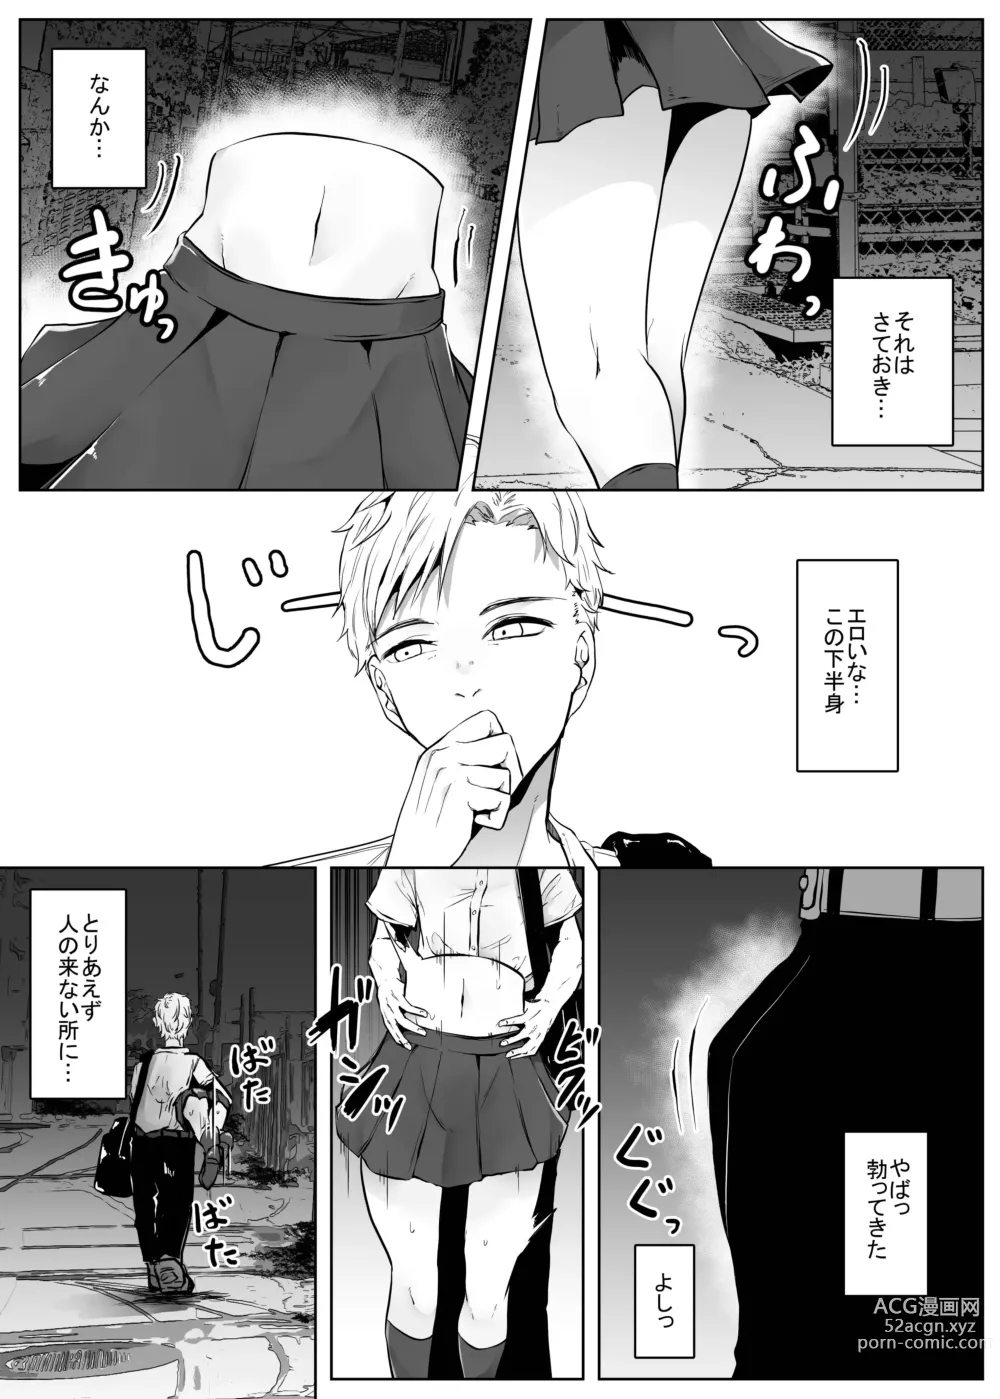 Page 9 of doujinshi Teke Teke SSR